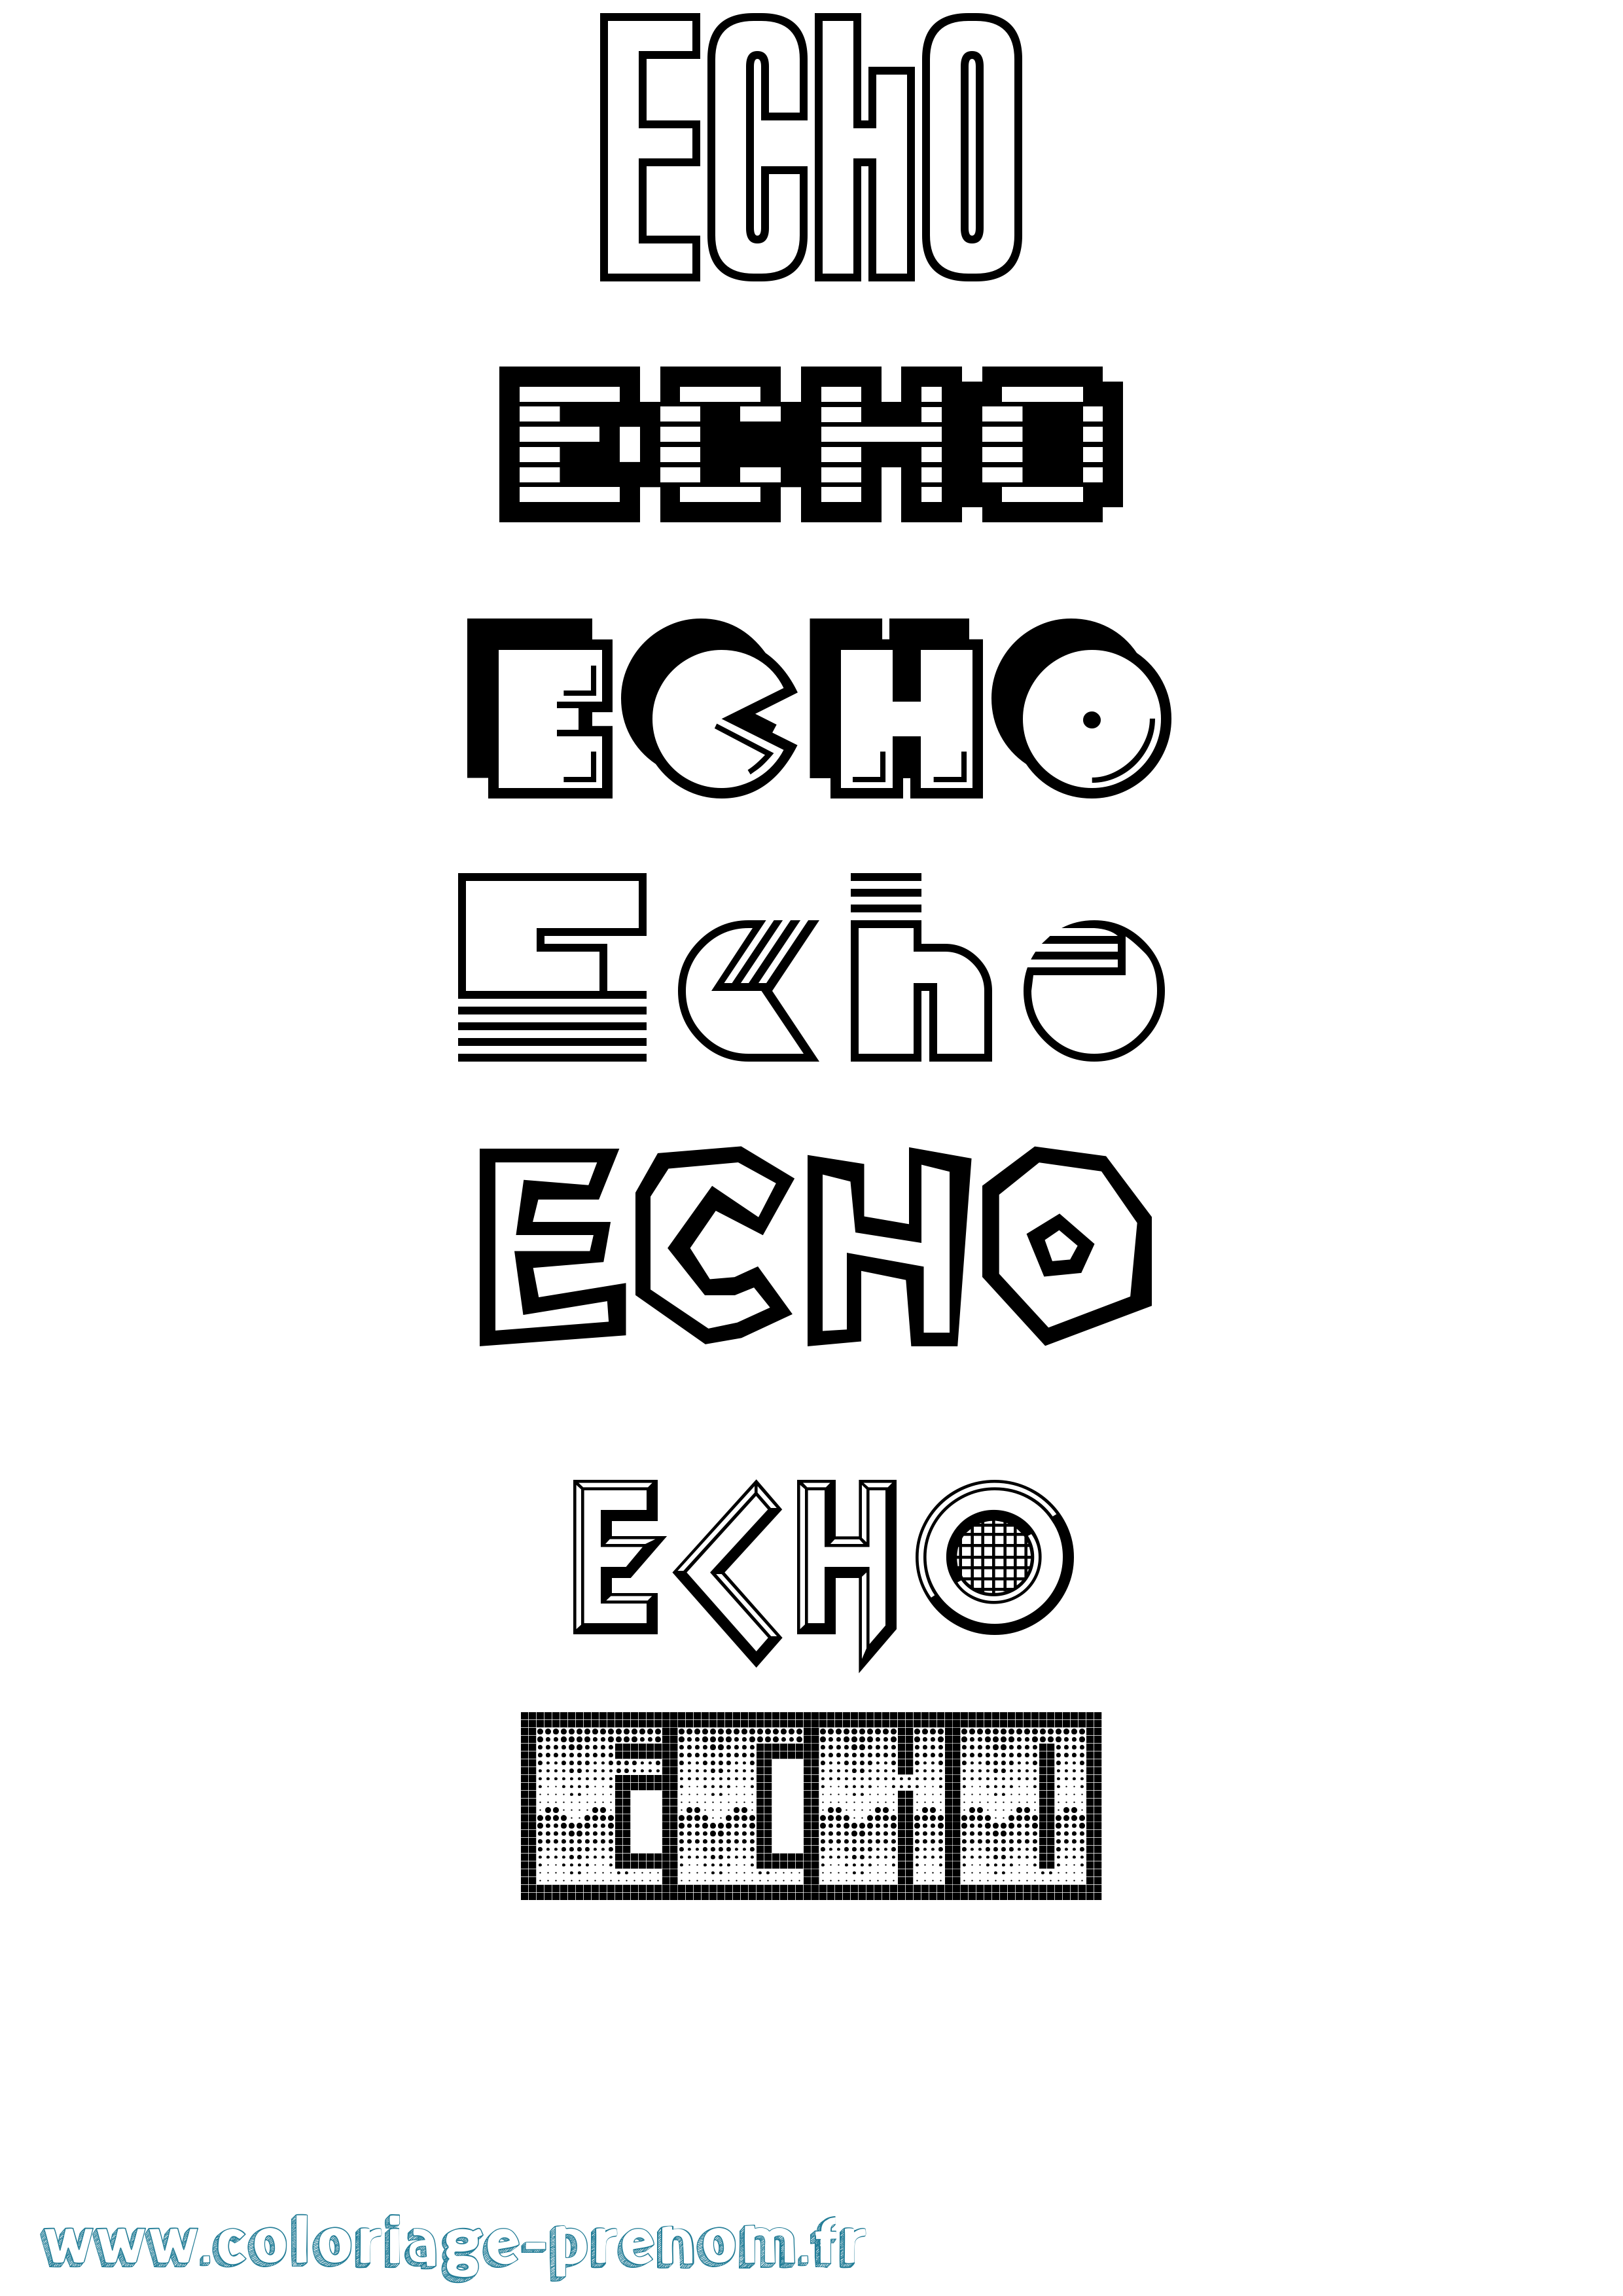 Coloriage prénom Echo Jeux Vidéos